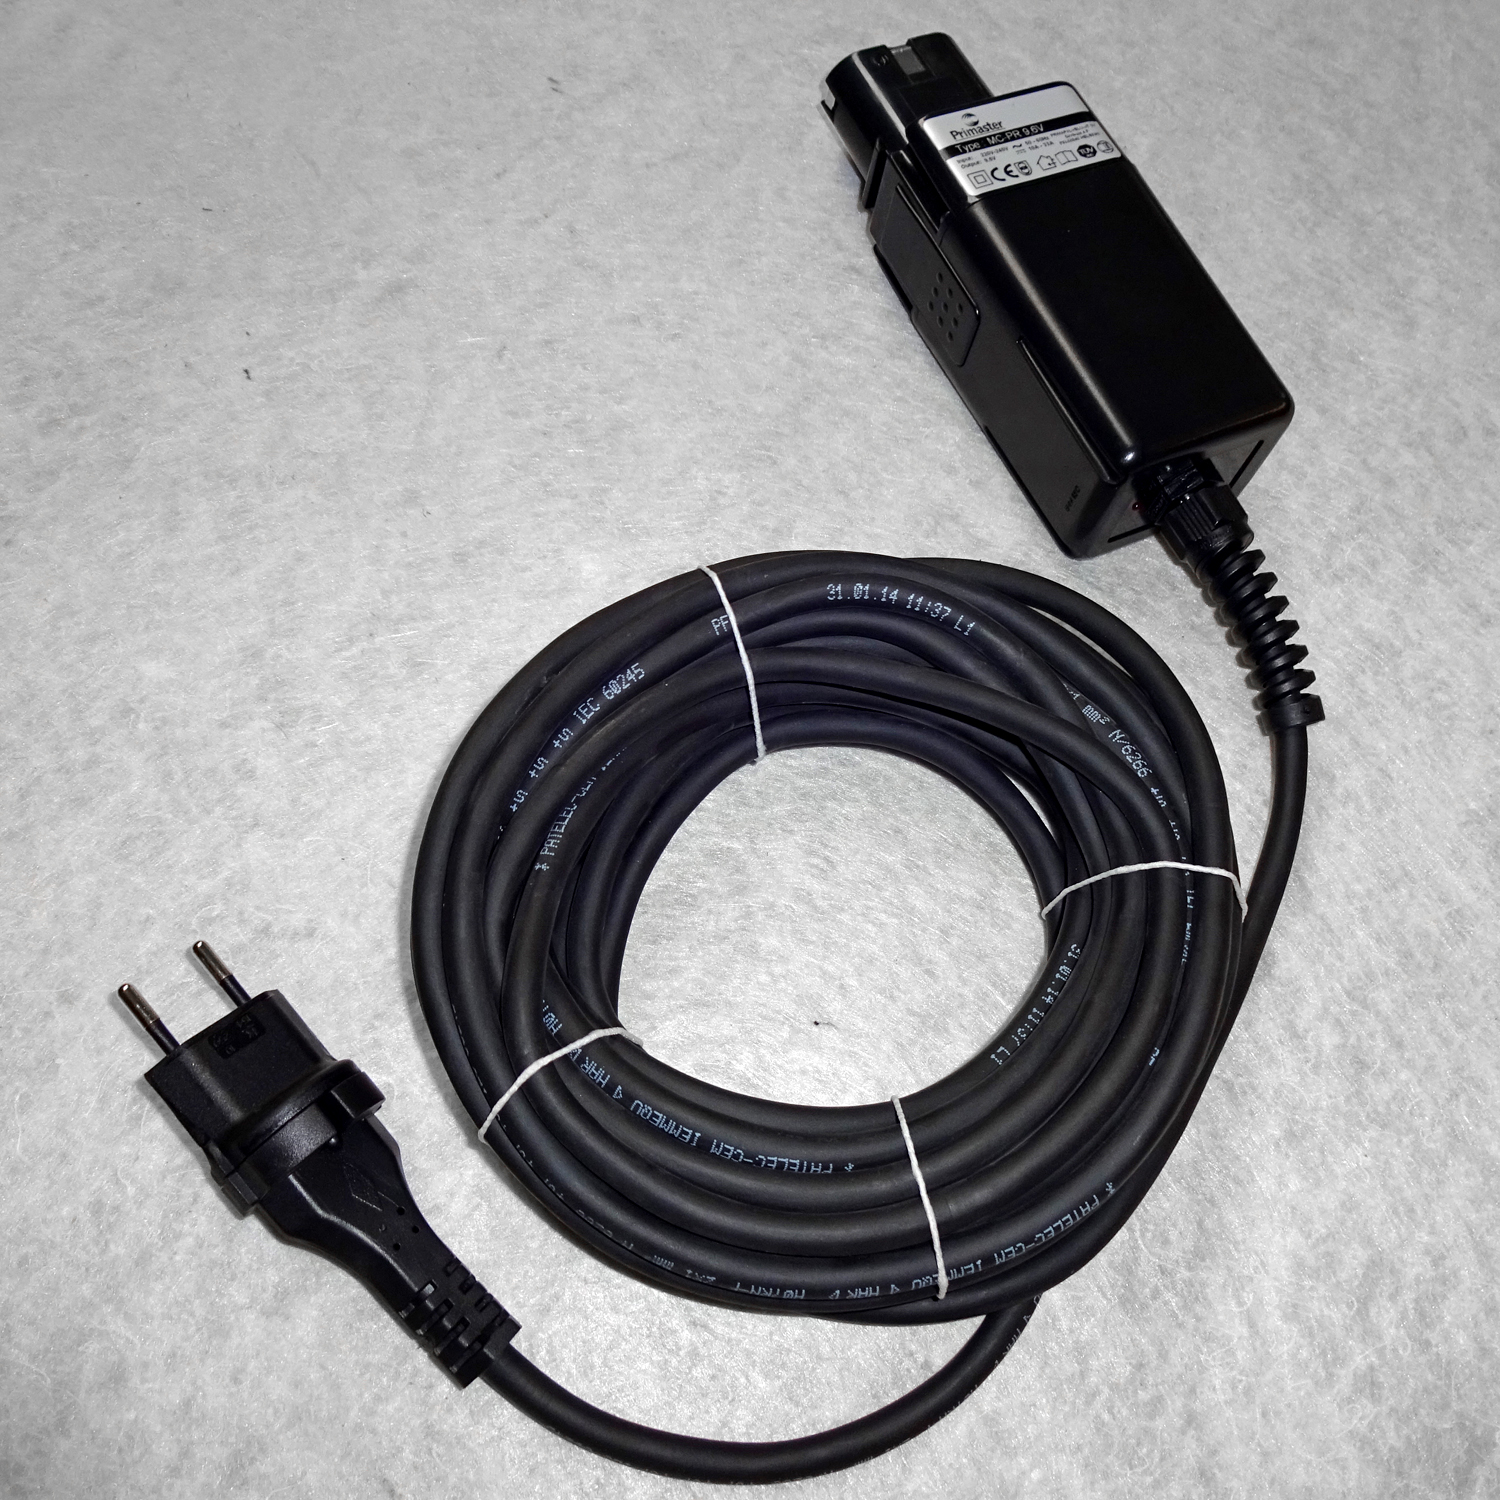 Netzteil zu Primaster 230 V mit Kabel
